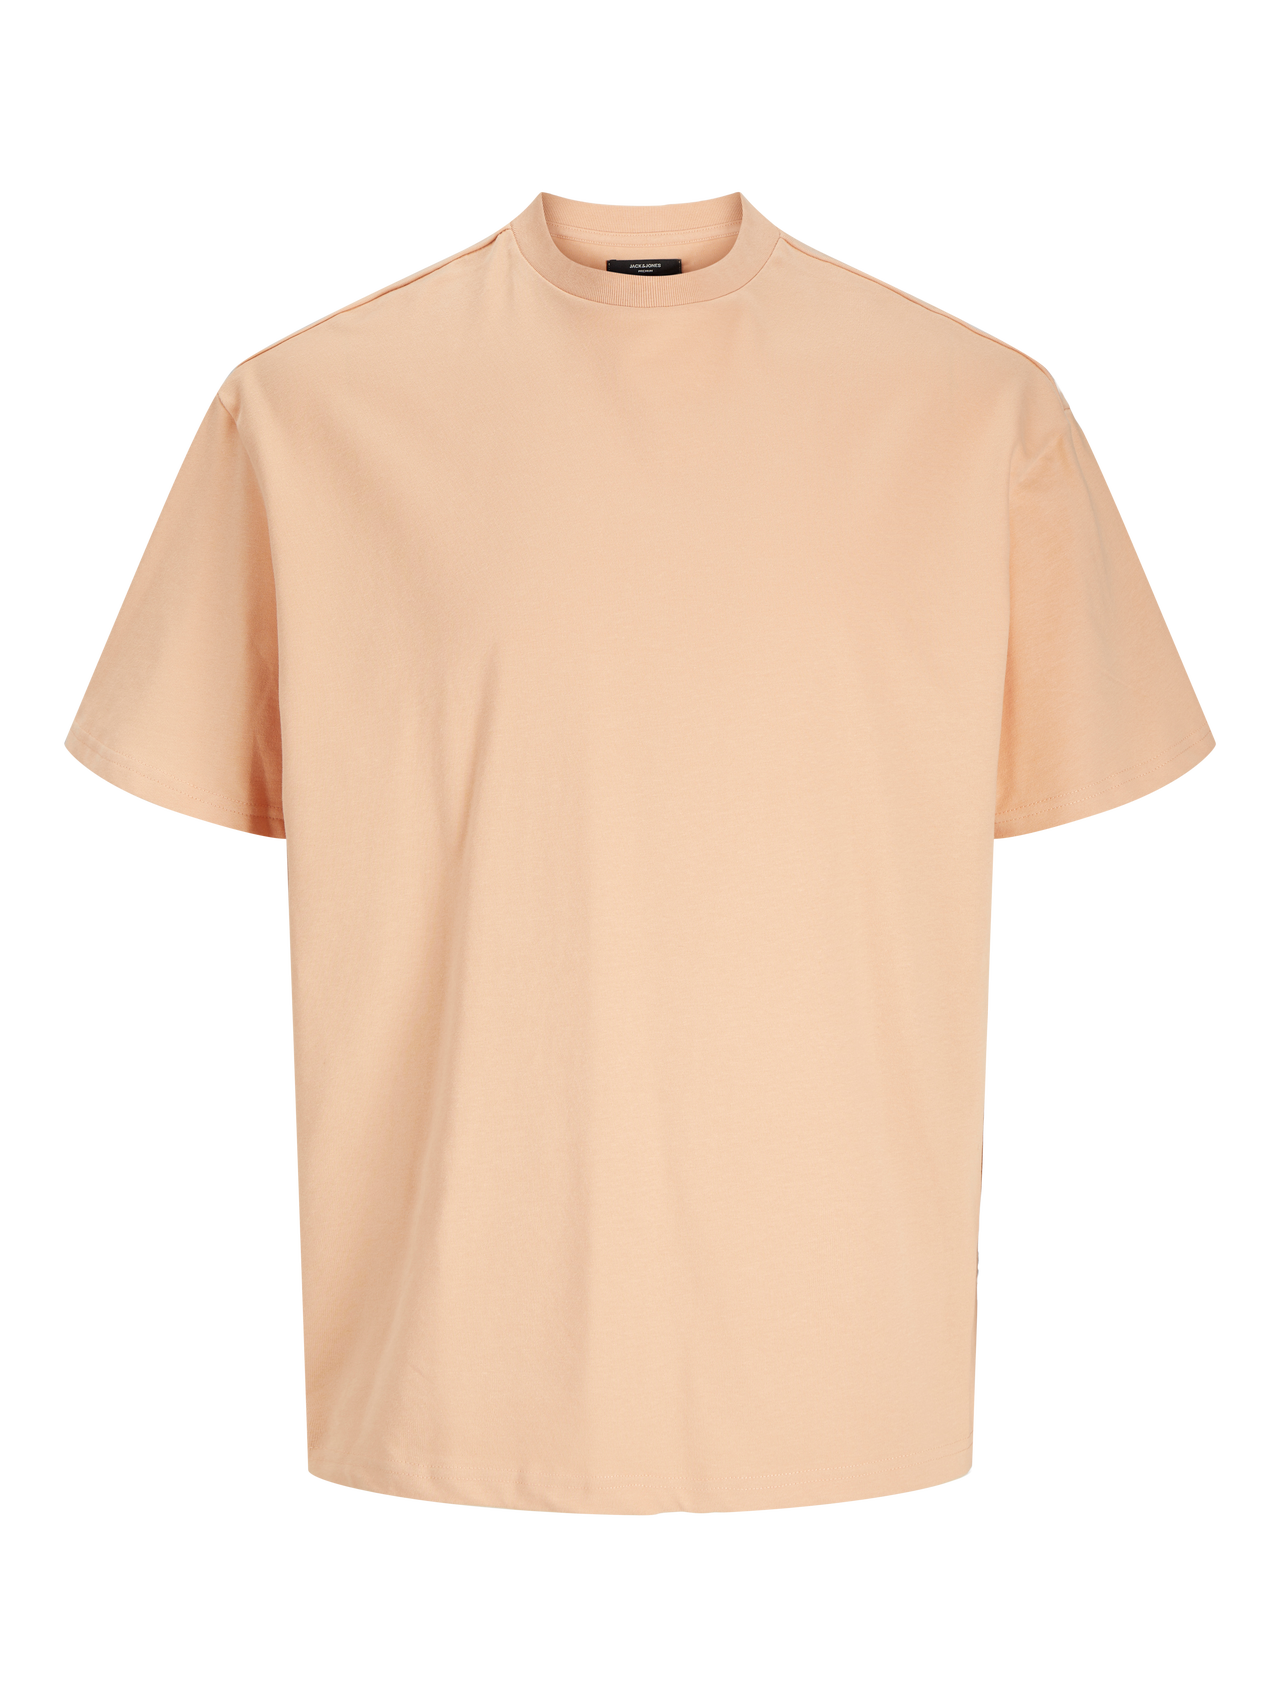 Jack & Jones Gładki Okrągły dekolt T-shirt -Peach Nougat  - 12255176